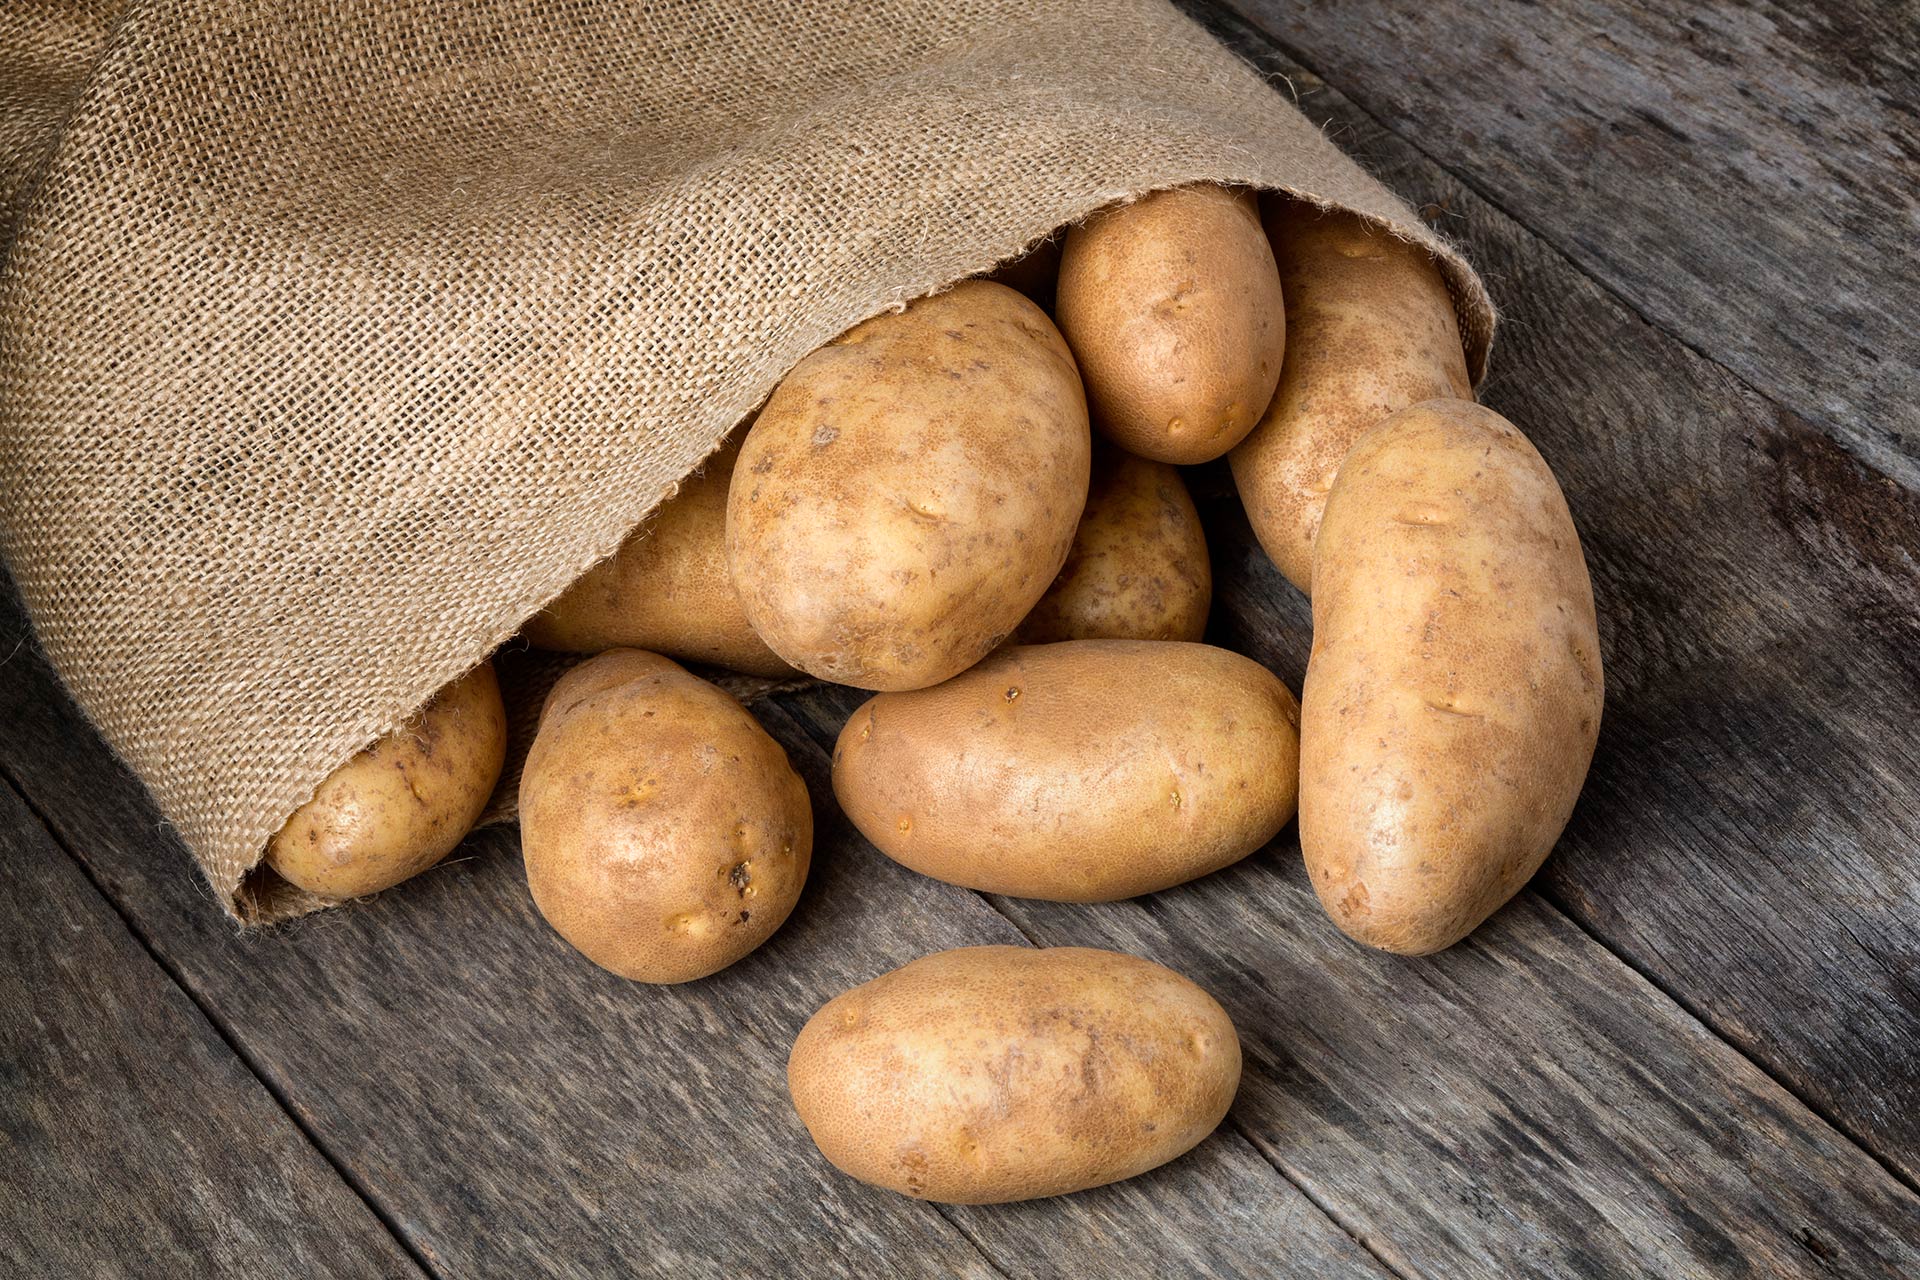 Sun Valley Potatoes